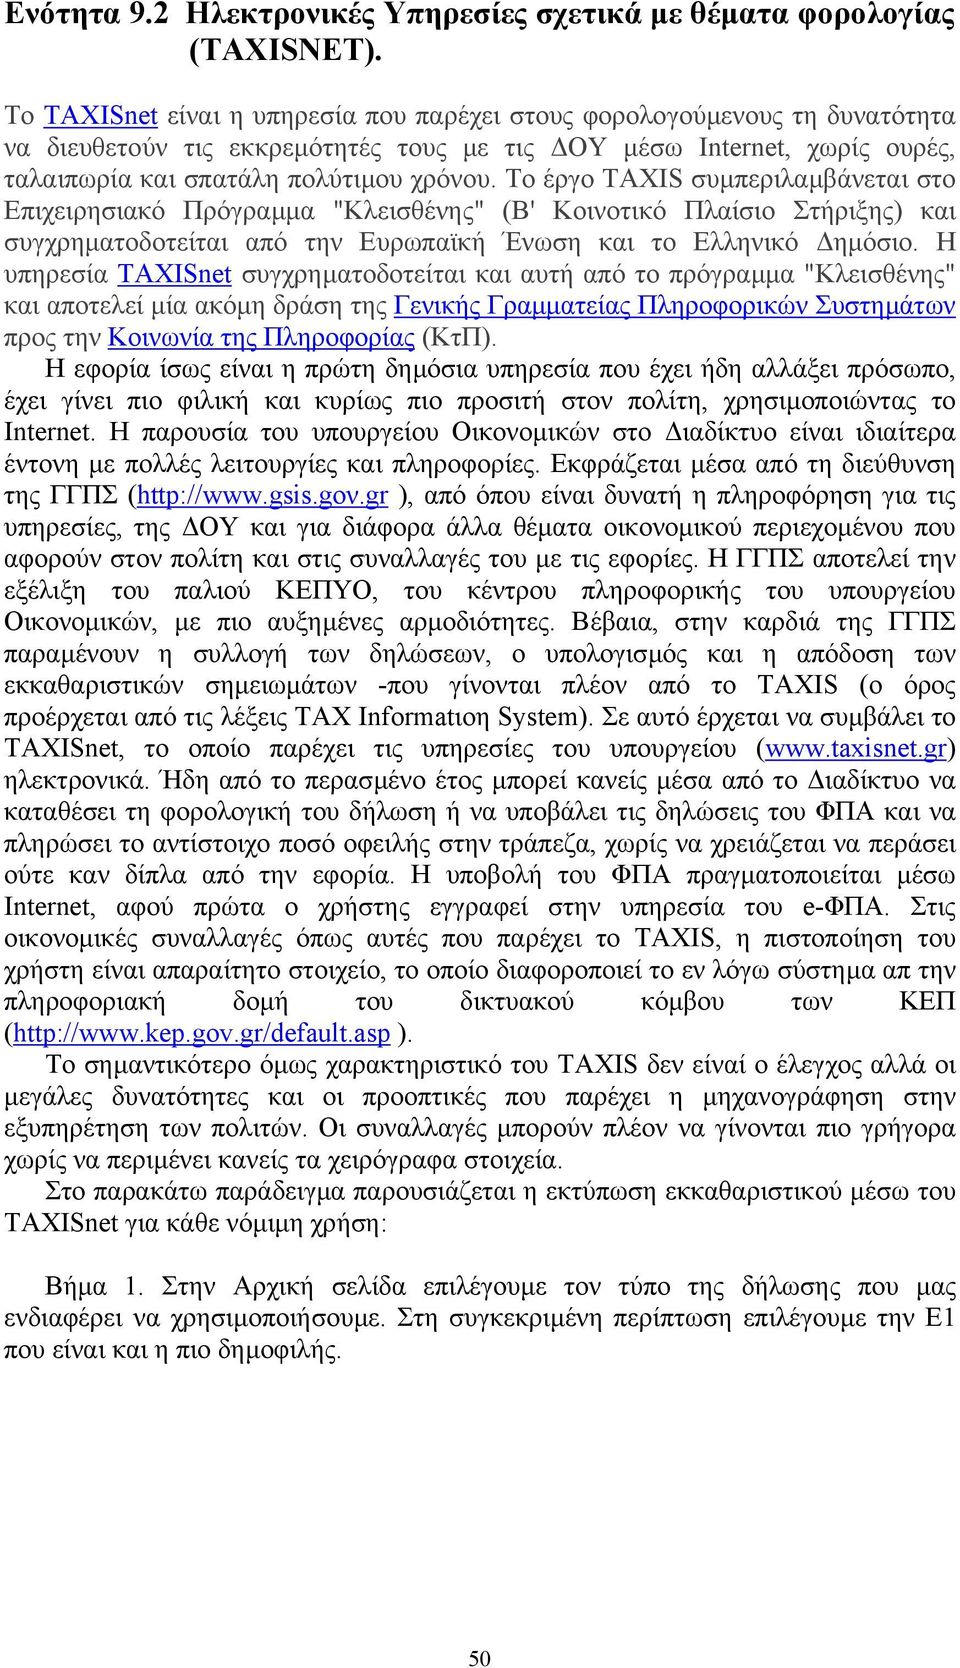 Το έργο TAXIS συµπεριλαµβάνεται στο Επιχειρησιακό Πρόγραµµα "Κλεισθένης" (Β' Κοινοτικό Πλαίσιο Στήριξης) και συγχρηµατοδοτείται από την Ευρωπαϊκή Ένωση και το Ελληνικό ηµόσιο.